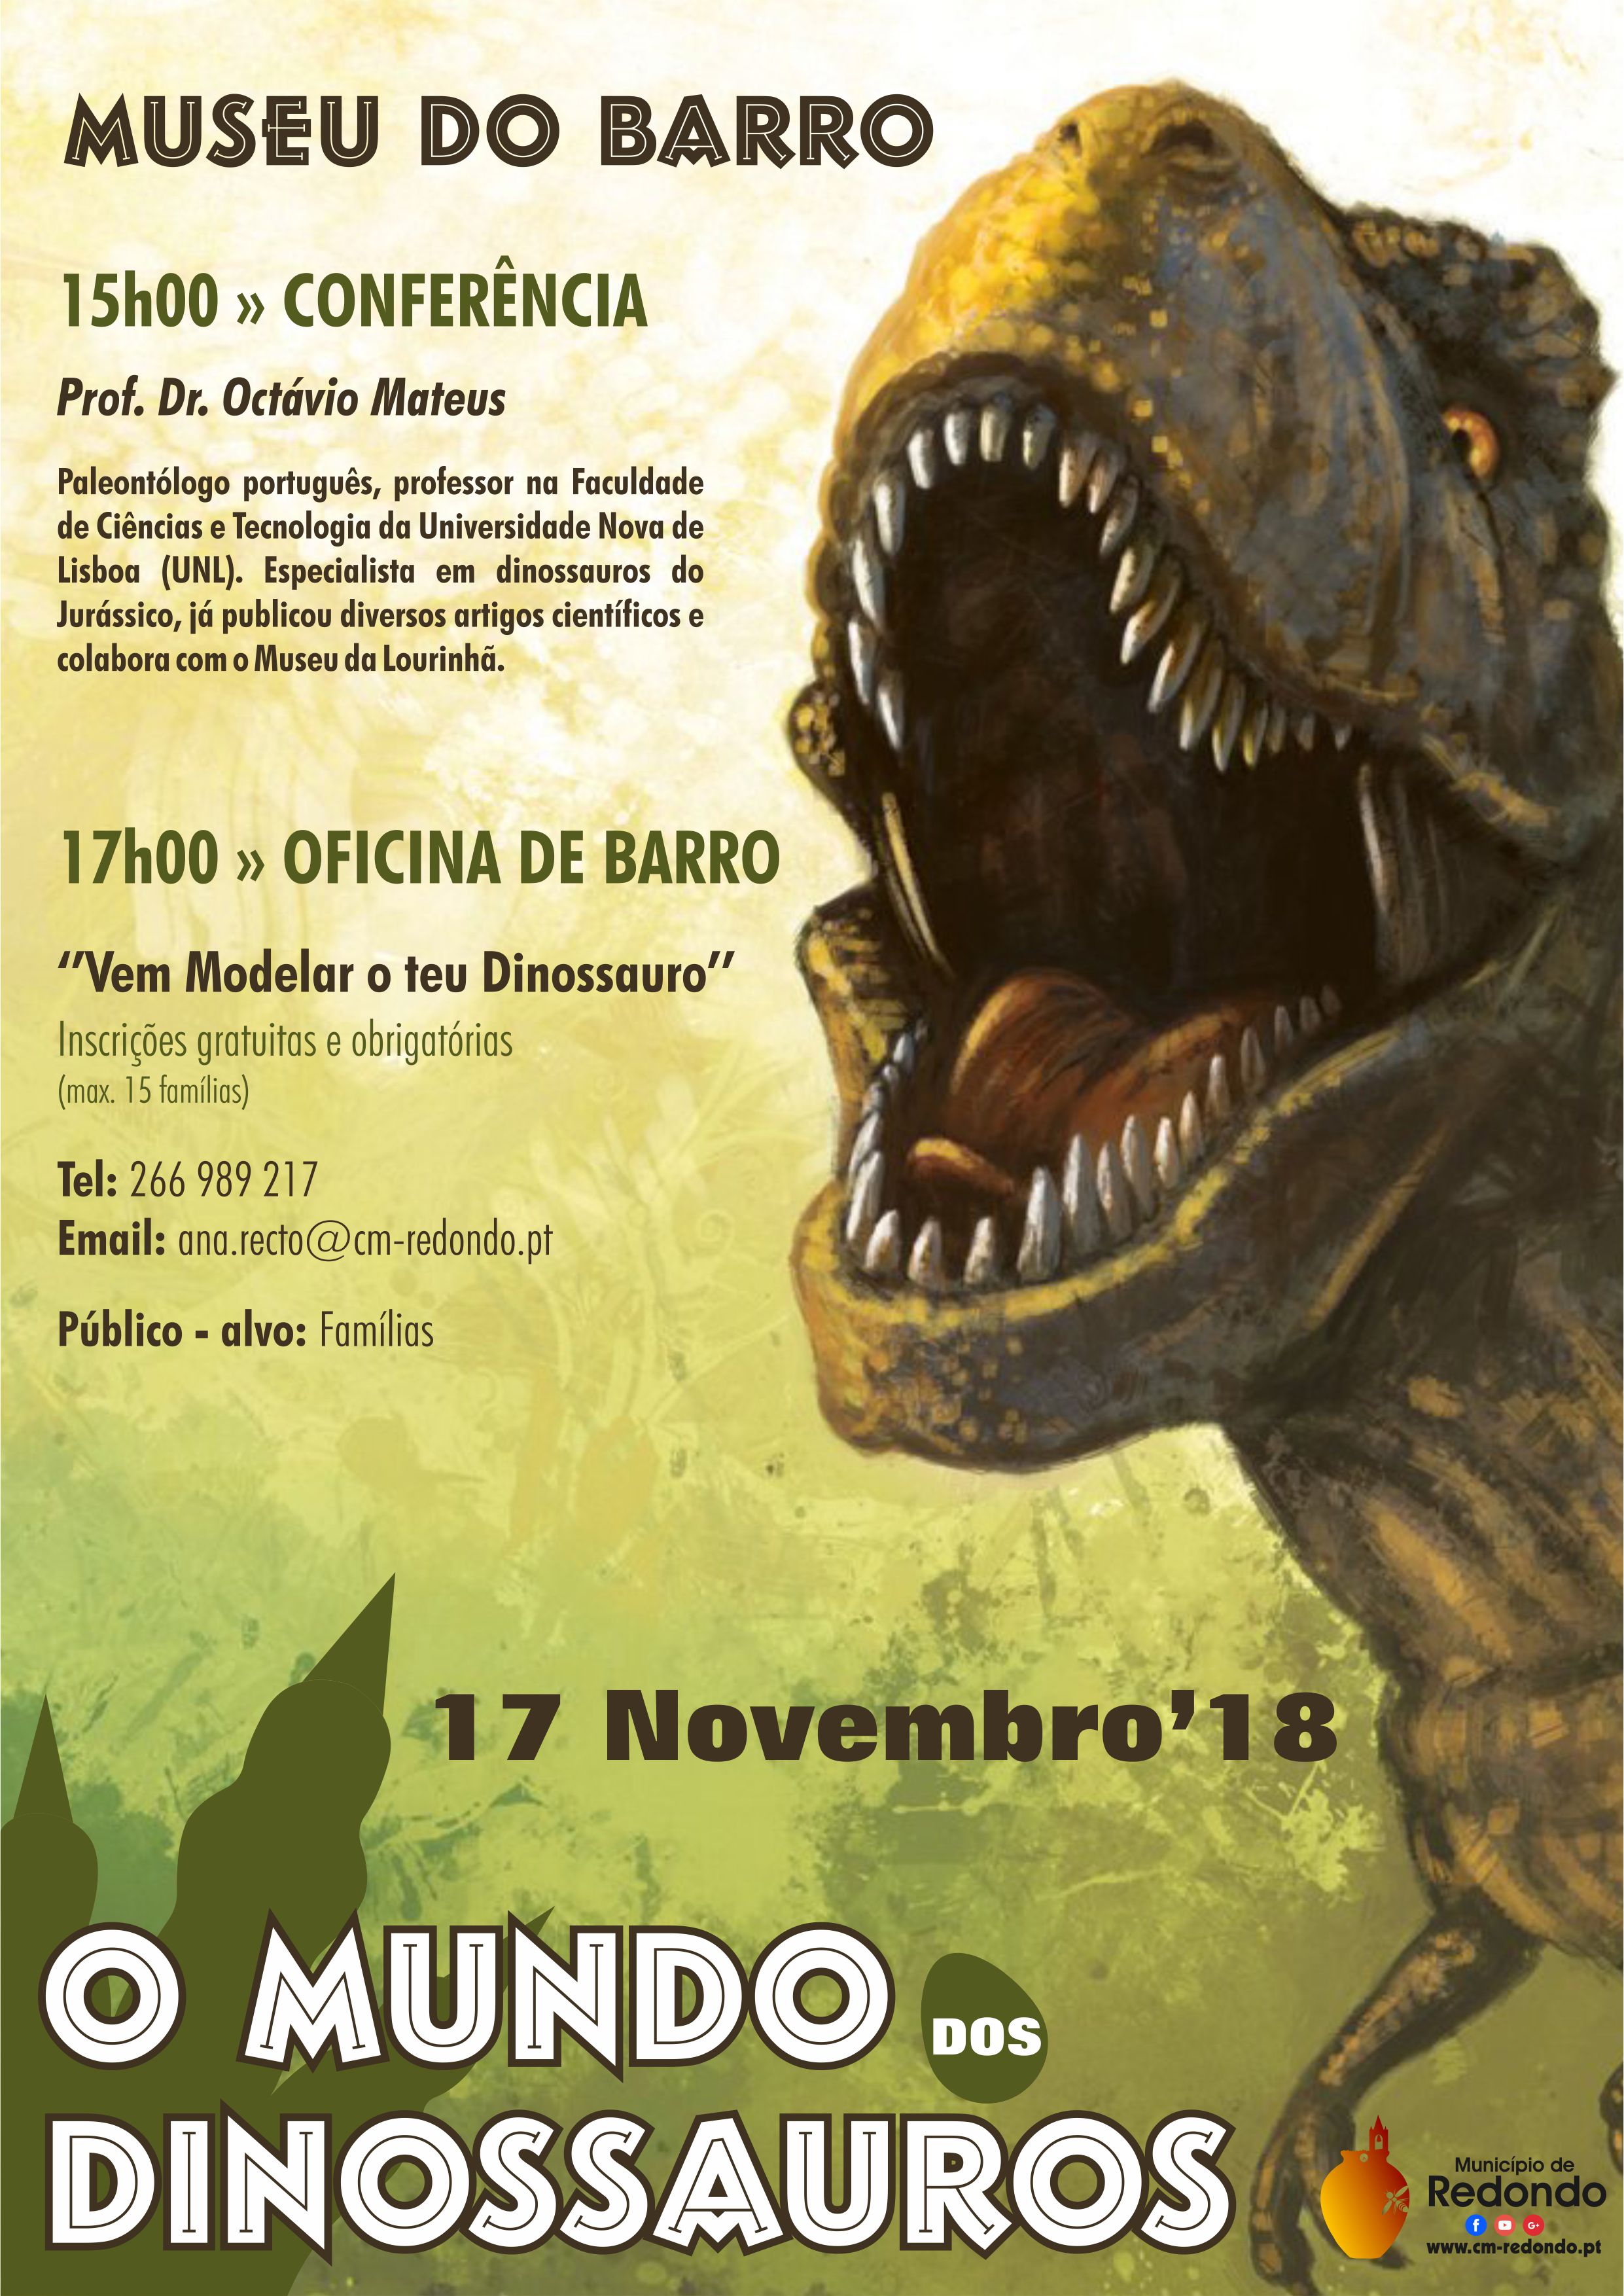 OMundodosDinossauros_F_0_1594718289.